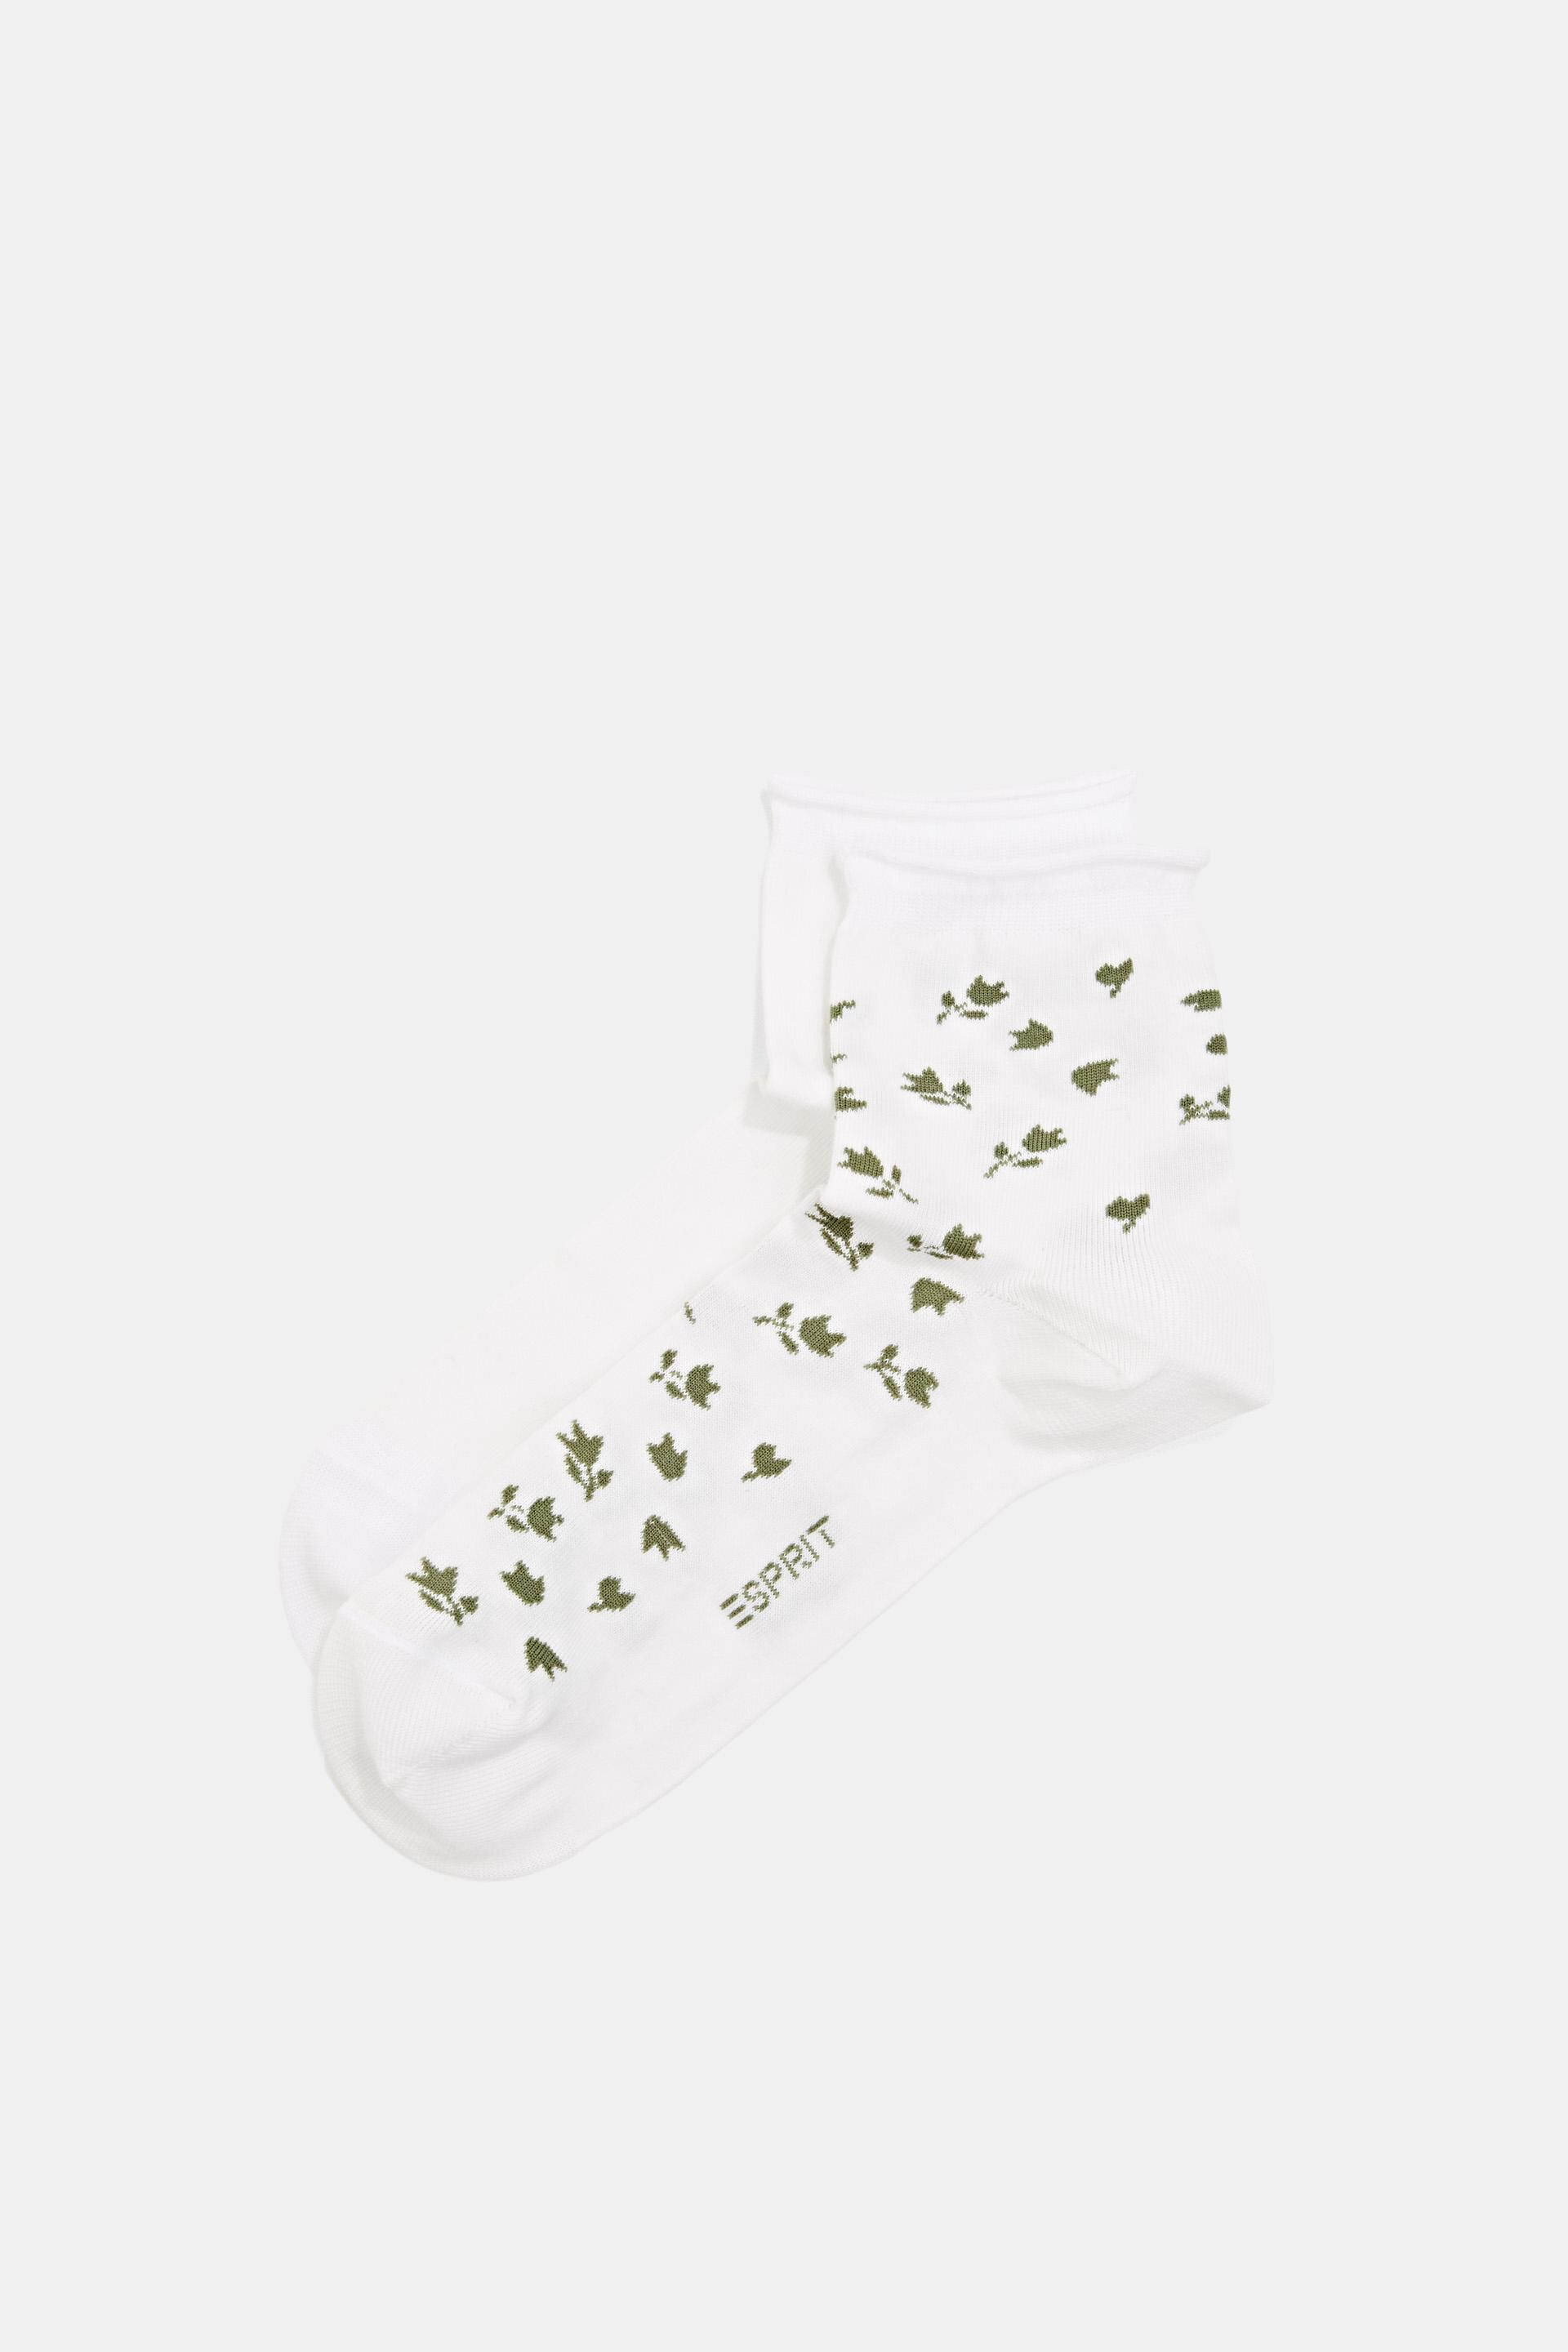 Esprit mit Socken kurze 2er-Pack Blumenmuster